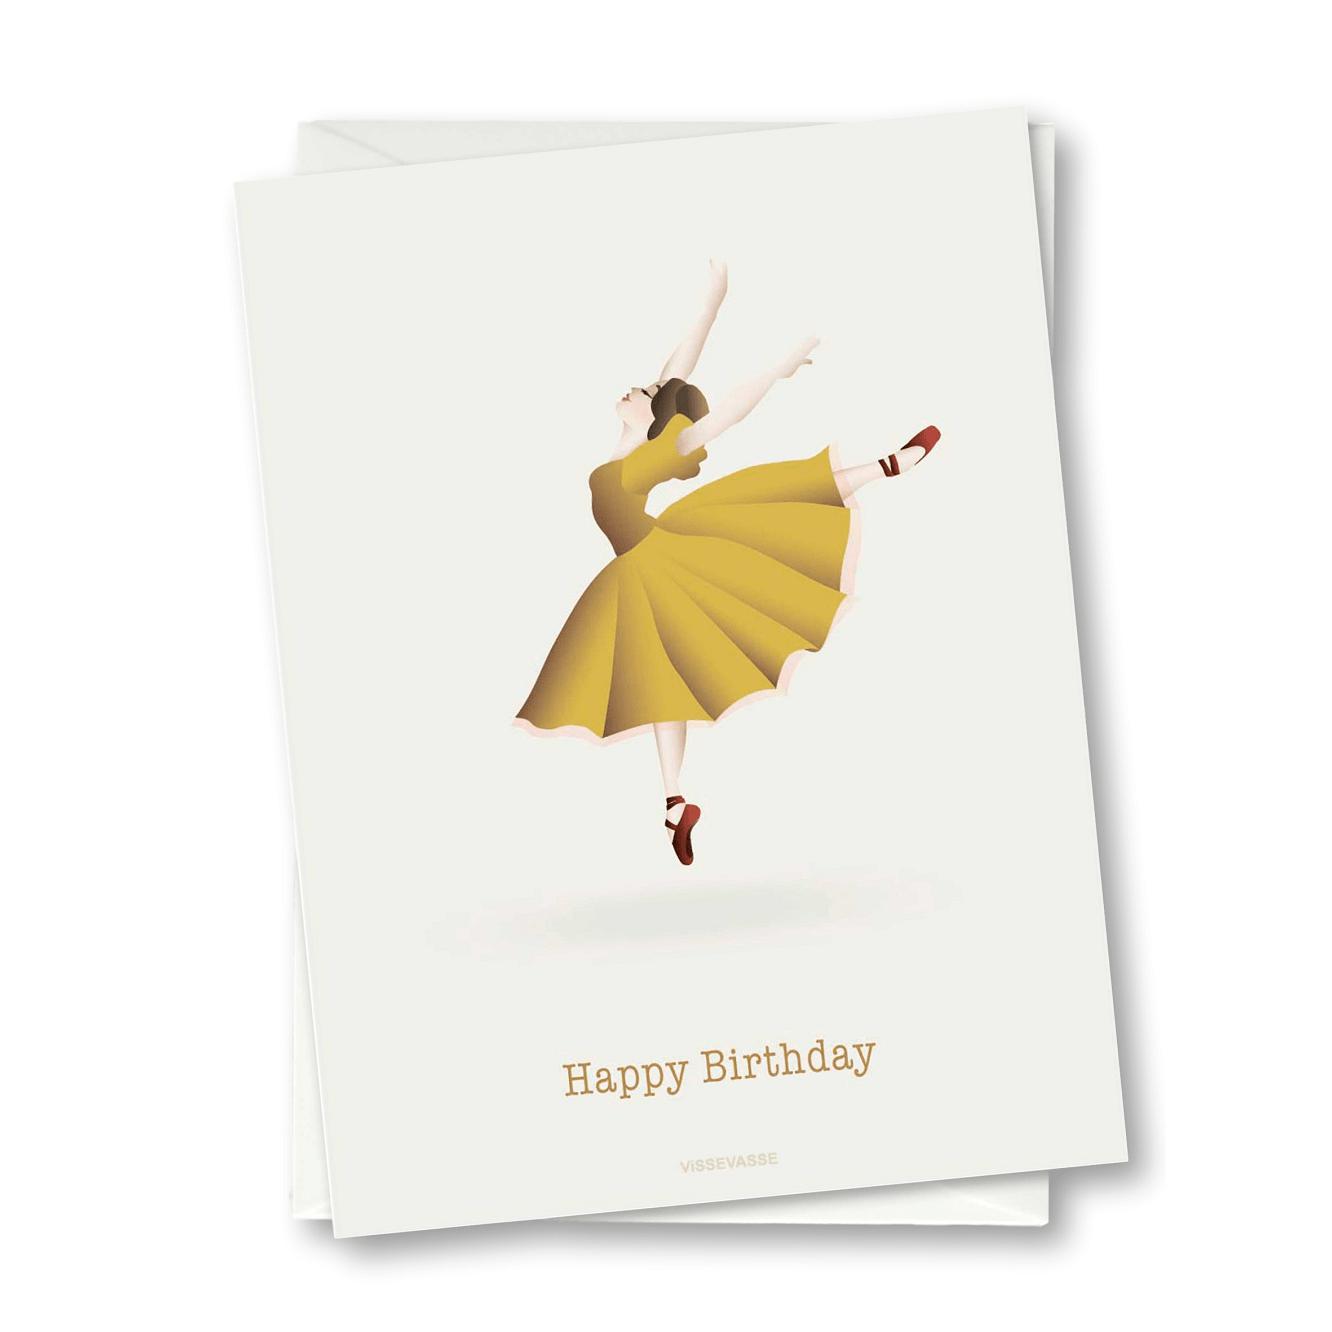 Vissevasse Všechno nejlepší k narozeninám Ballerina Blonging Card, 10,5x15cm